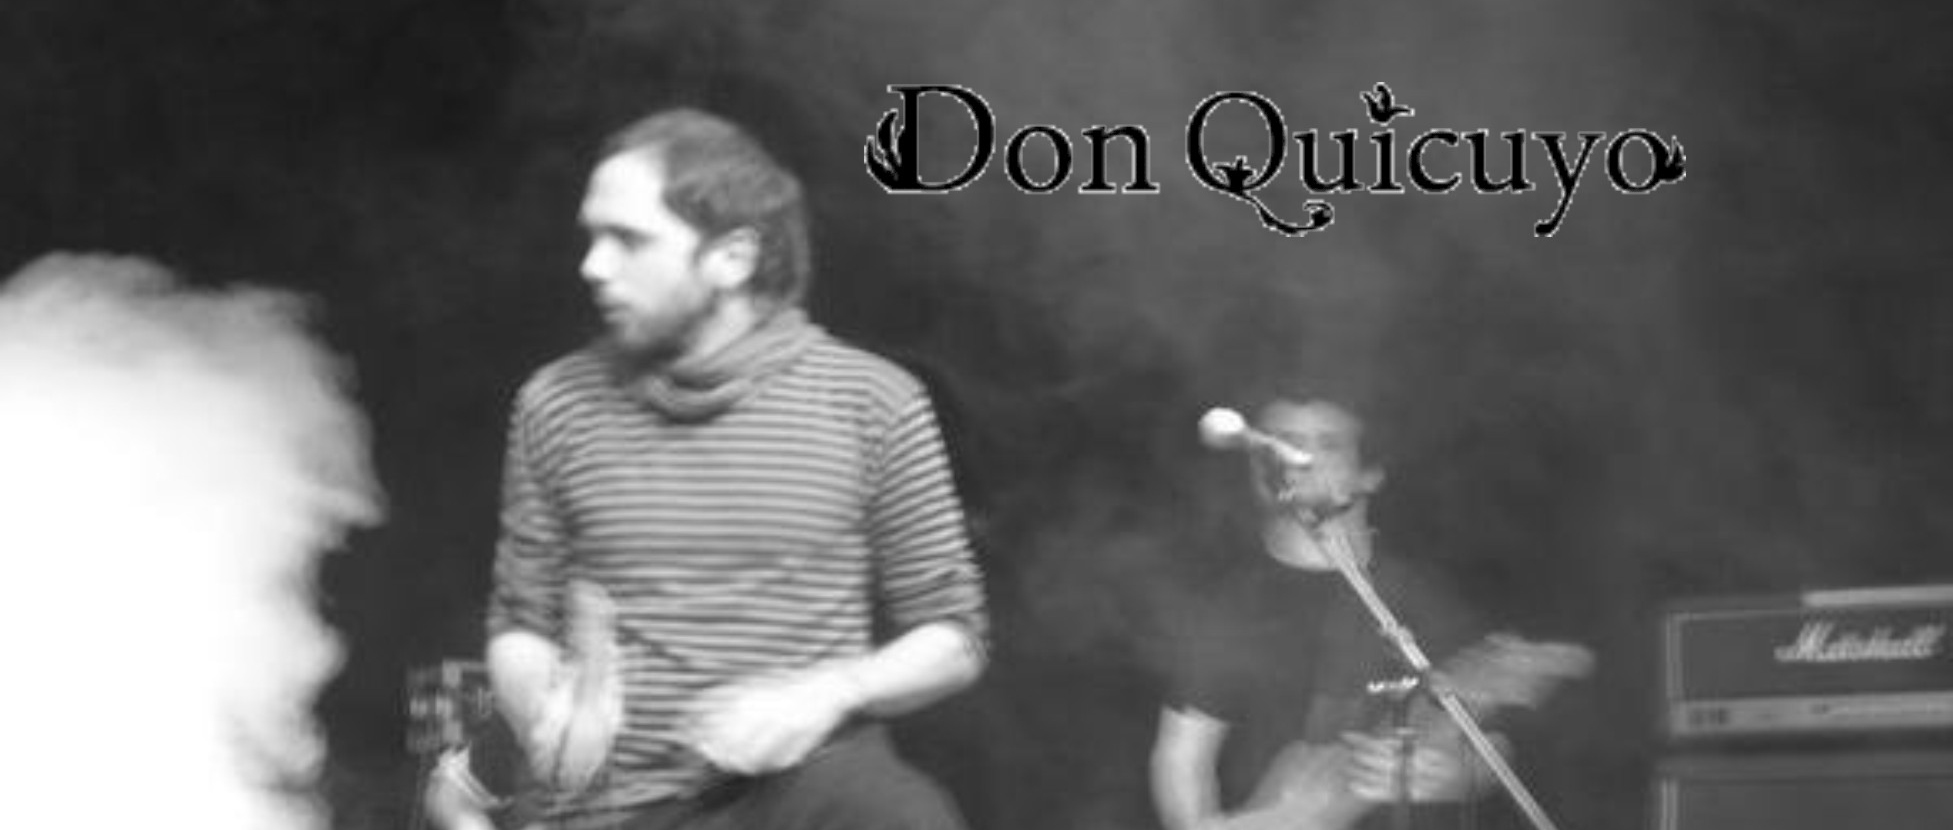 Don Quicuyo